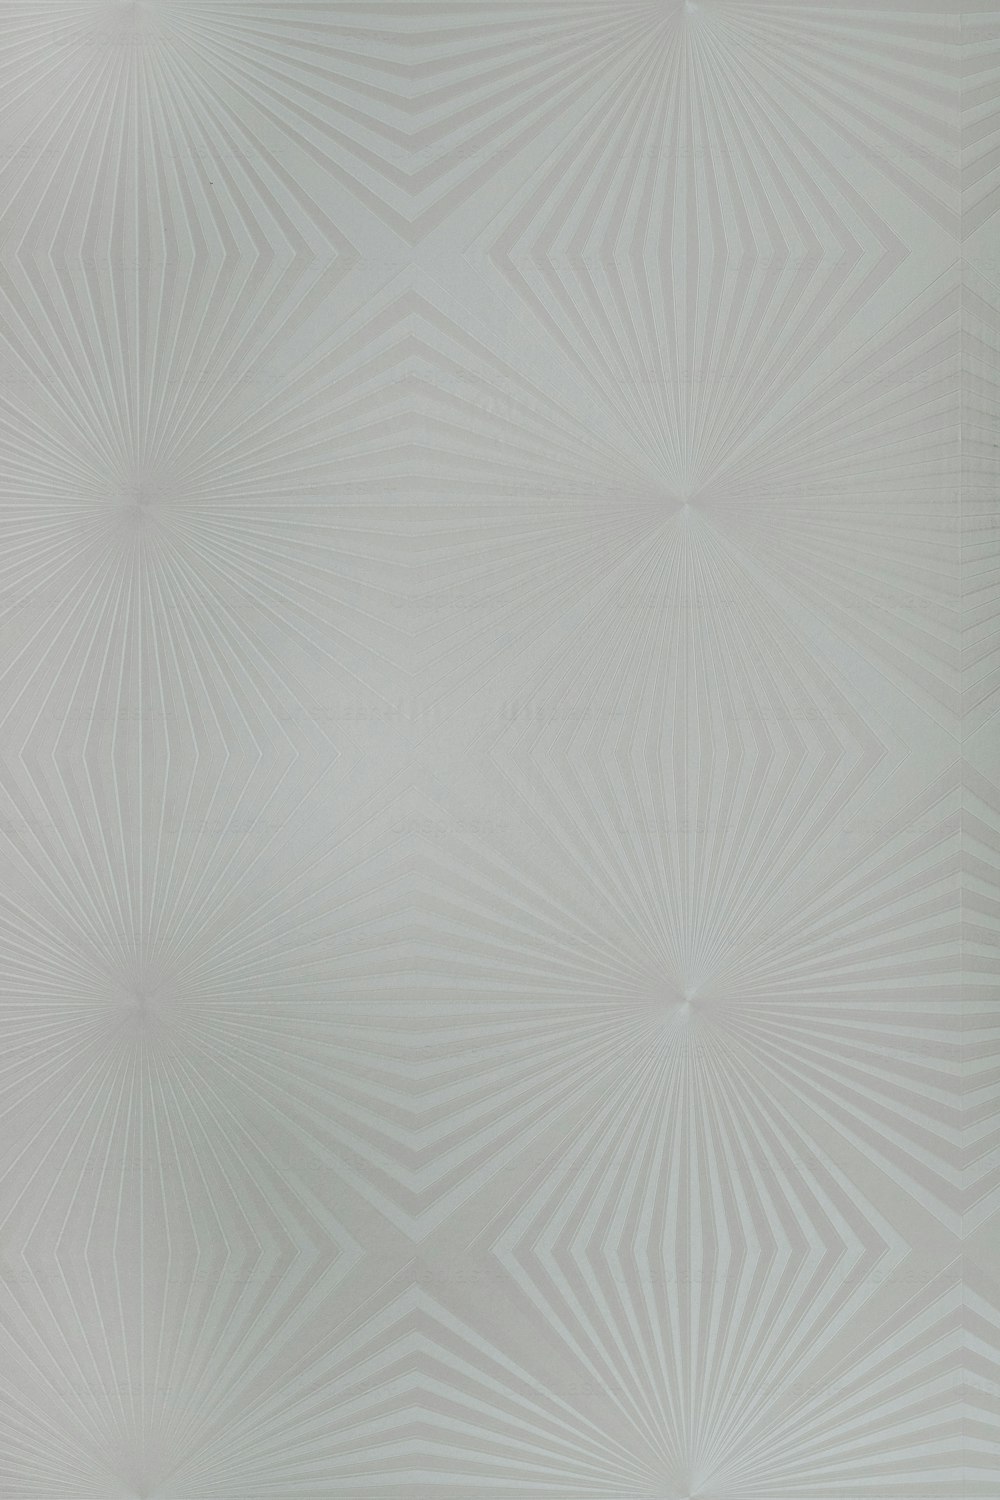 eine weiße Wand mit einem Muster darauf